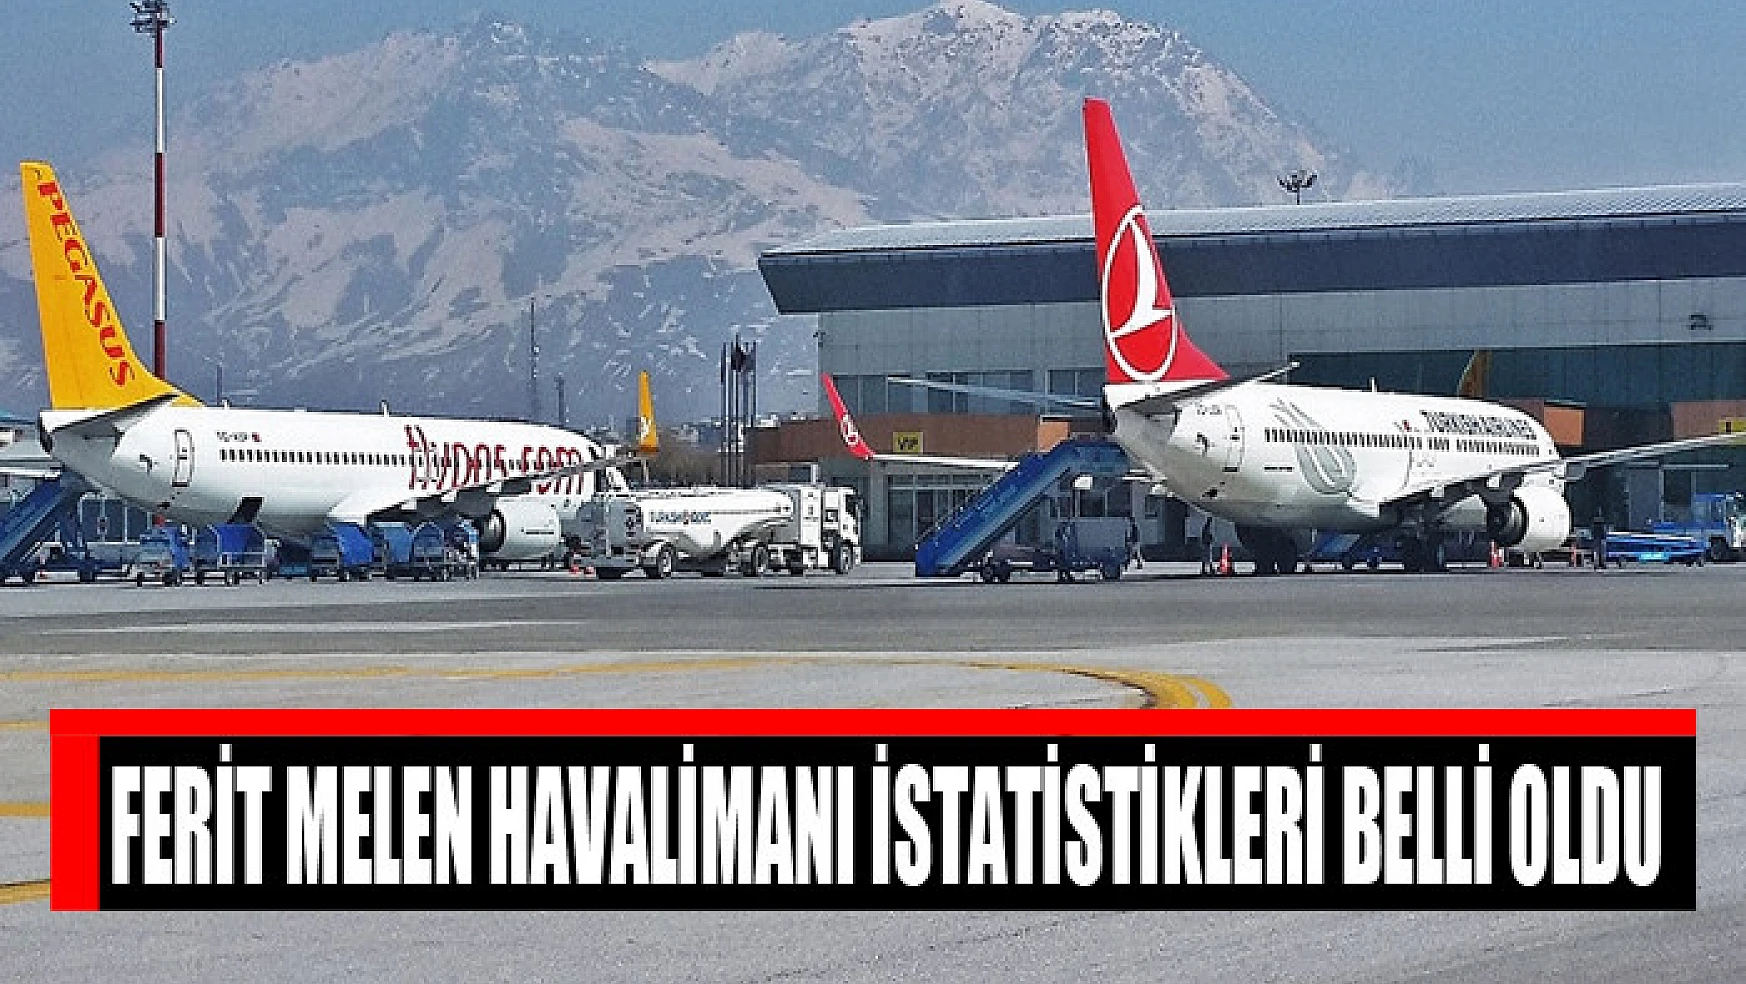 Ferit Melen Havalimanı istatistikleri belli oldu